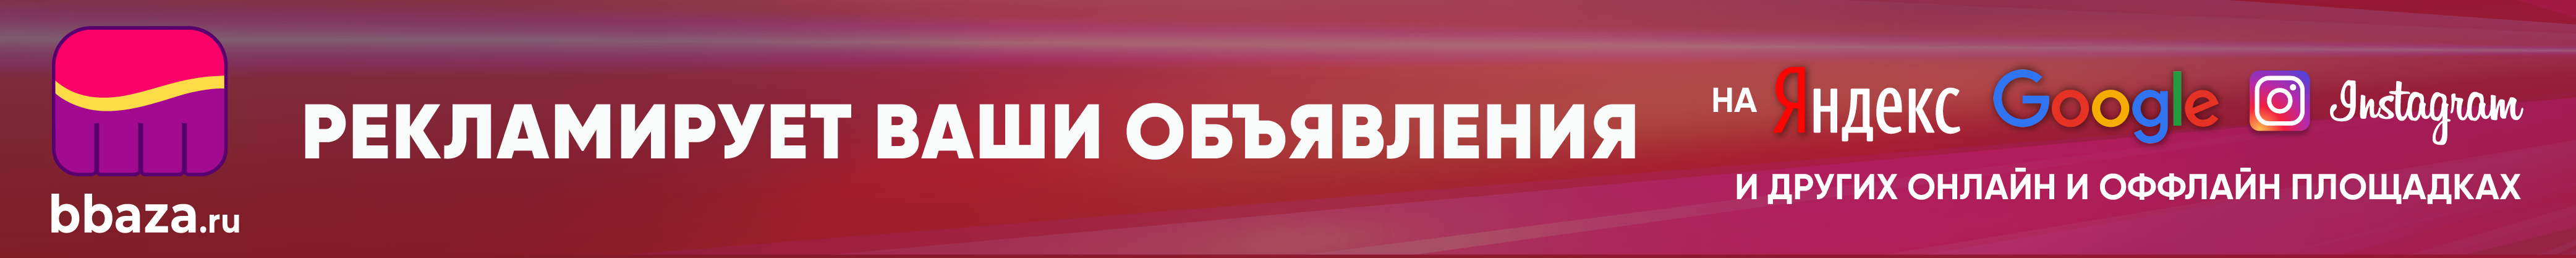 Рекламируем Ваши объявления в Яндекс, Google, instagram